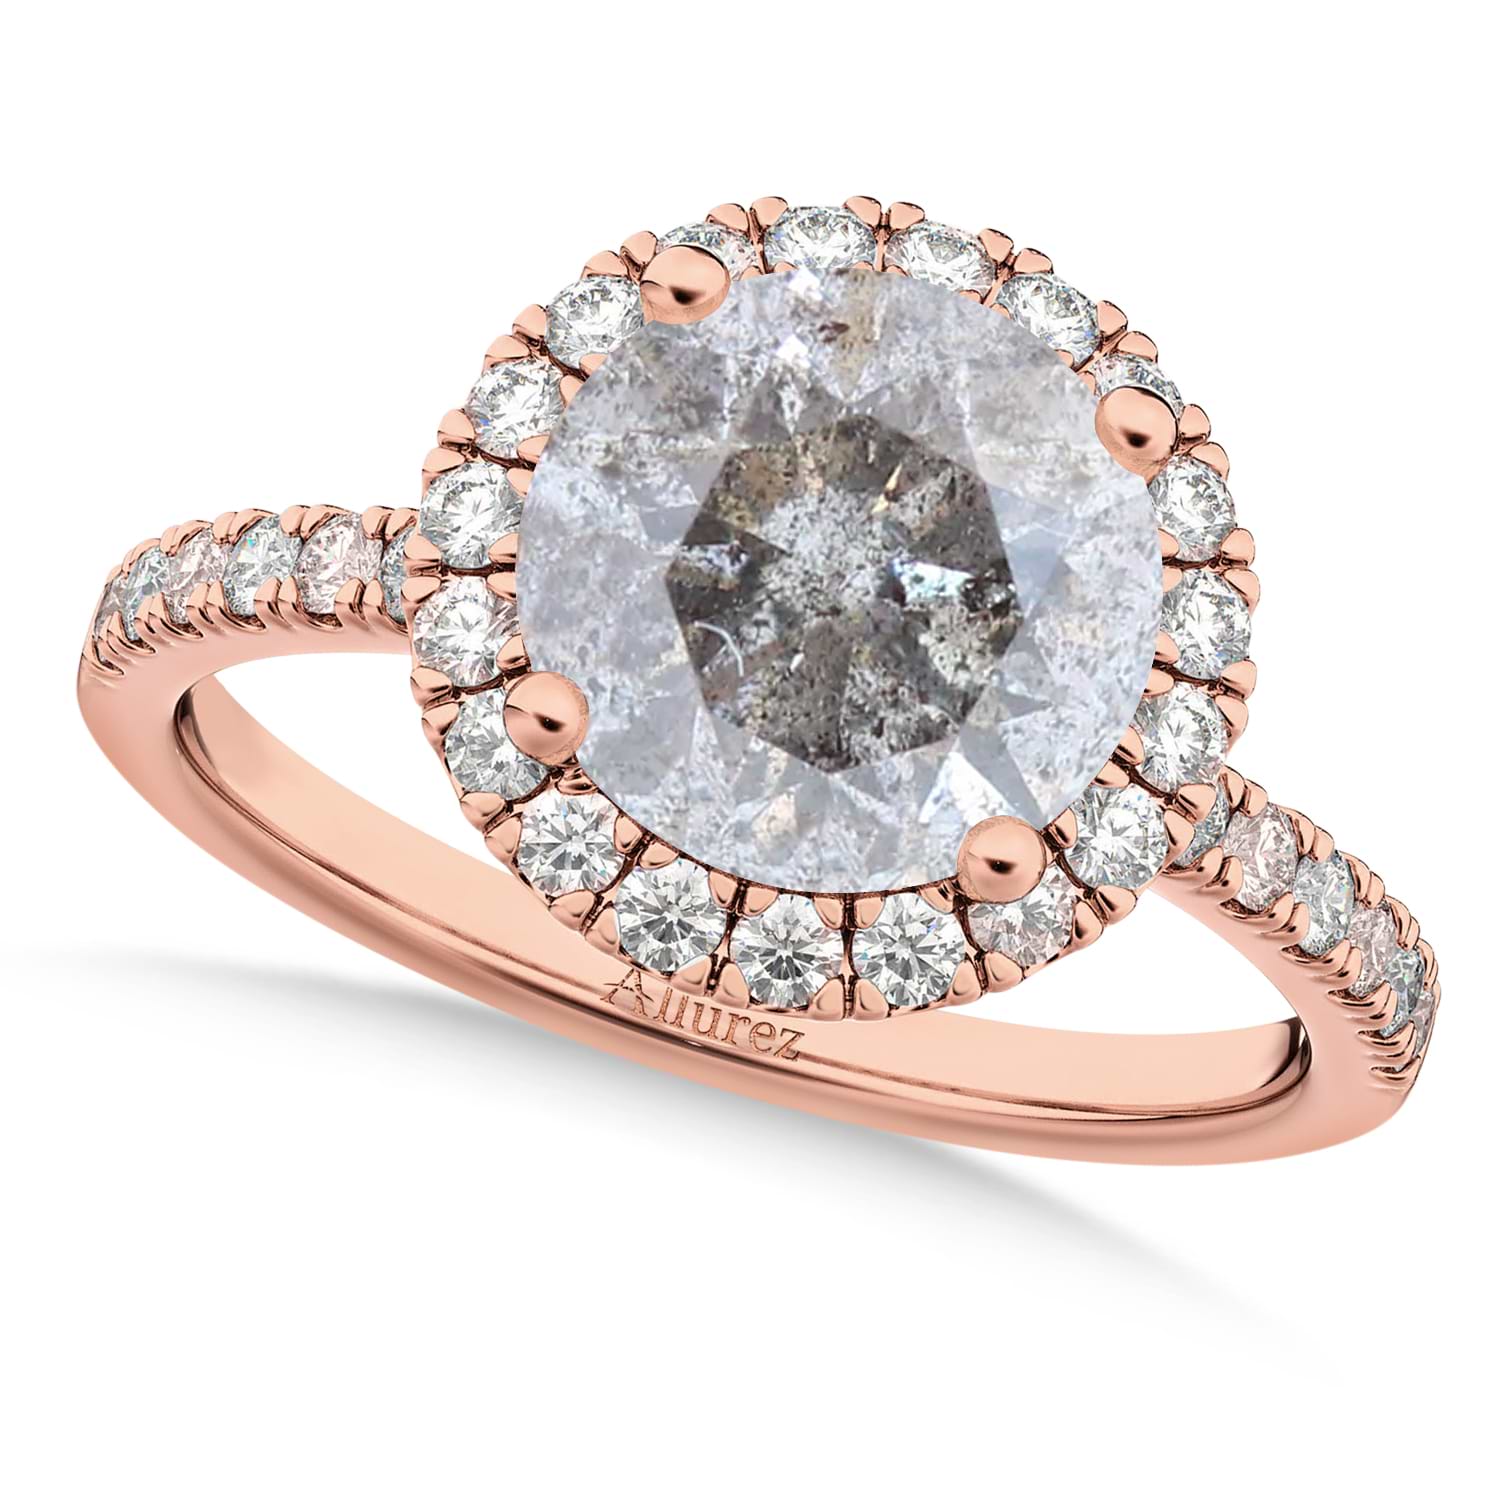 Halo Salt & Pepper & White Diamond Engagement Ring 14K Rose Gold (2.50ct)